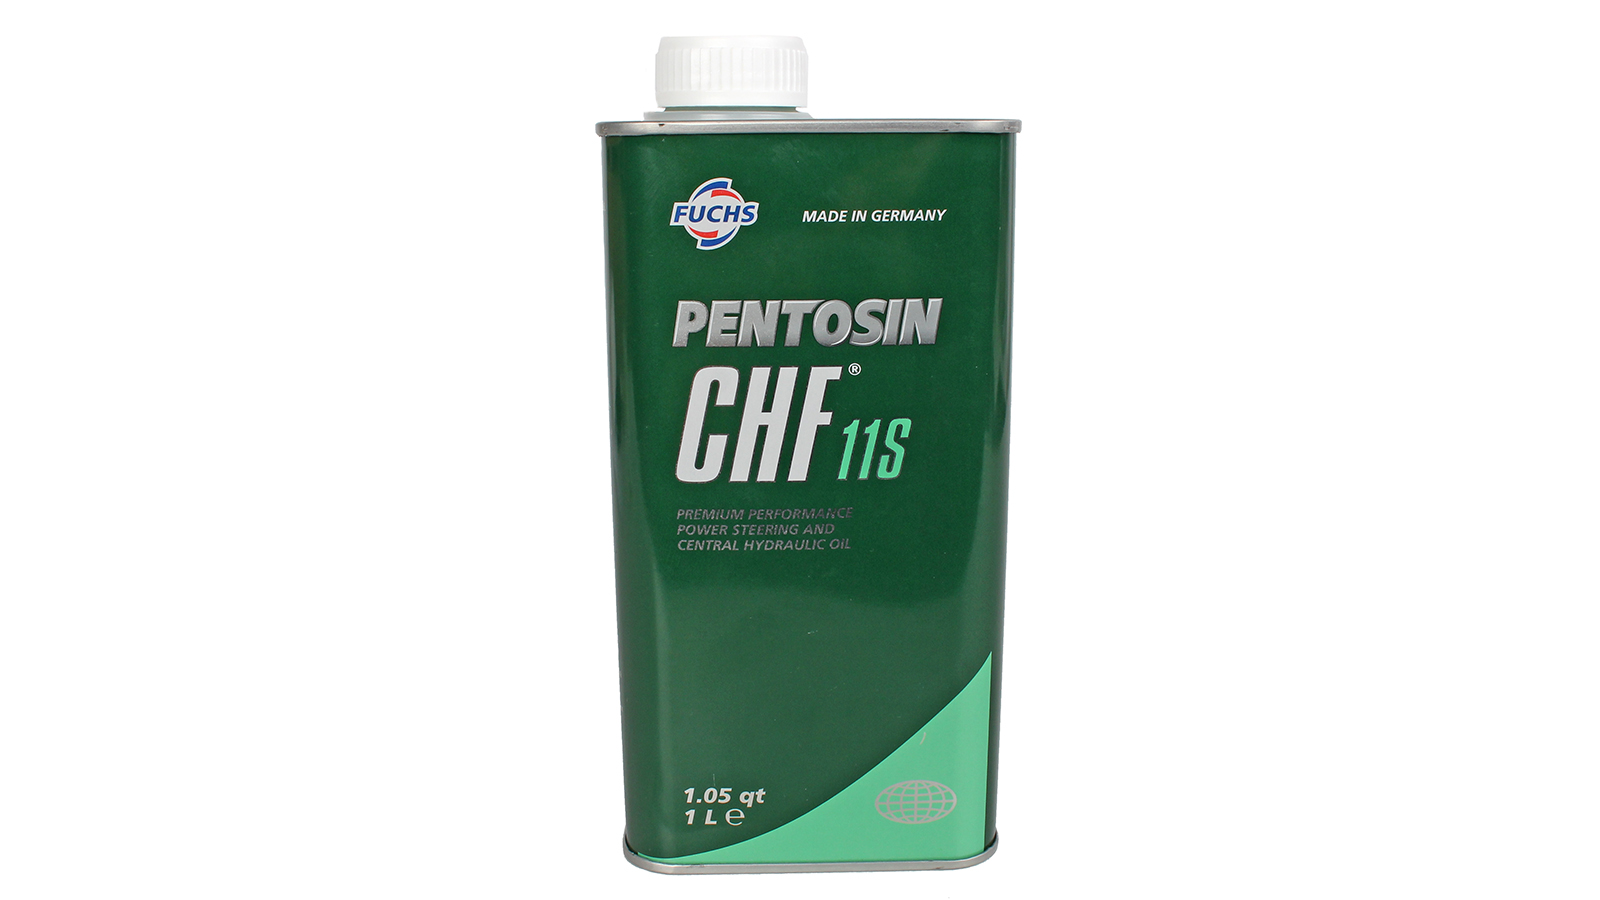 Жидкость гидроусилителя руля PENTOSIN 1л CHF 11S фотография №1